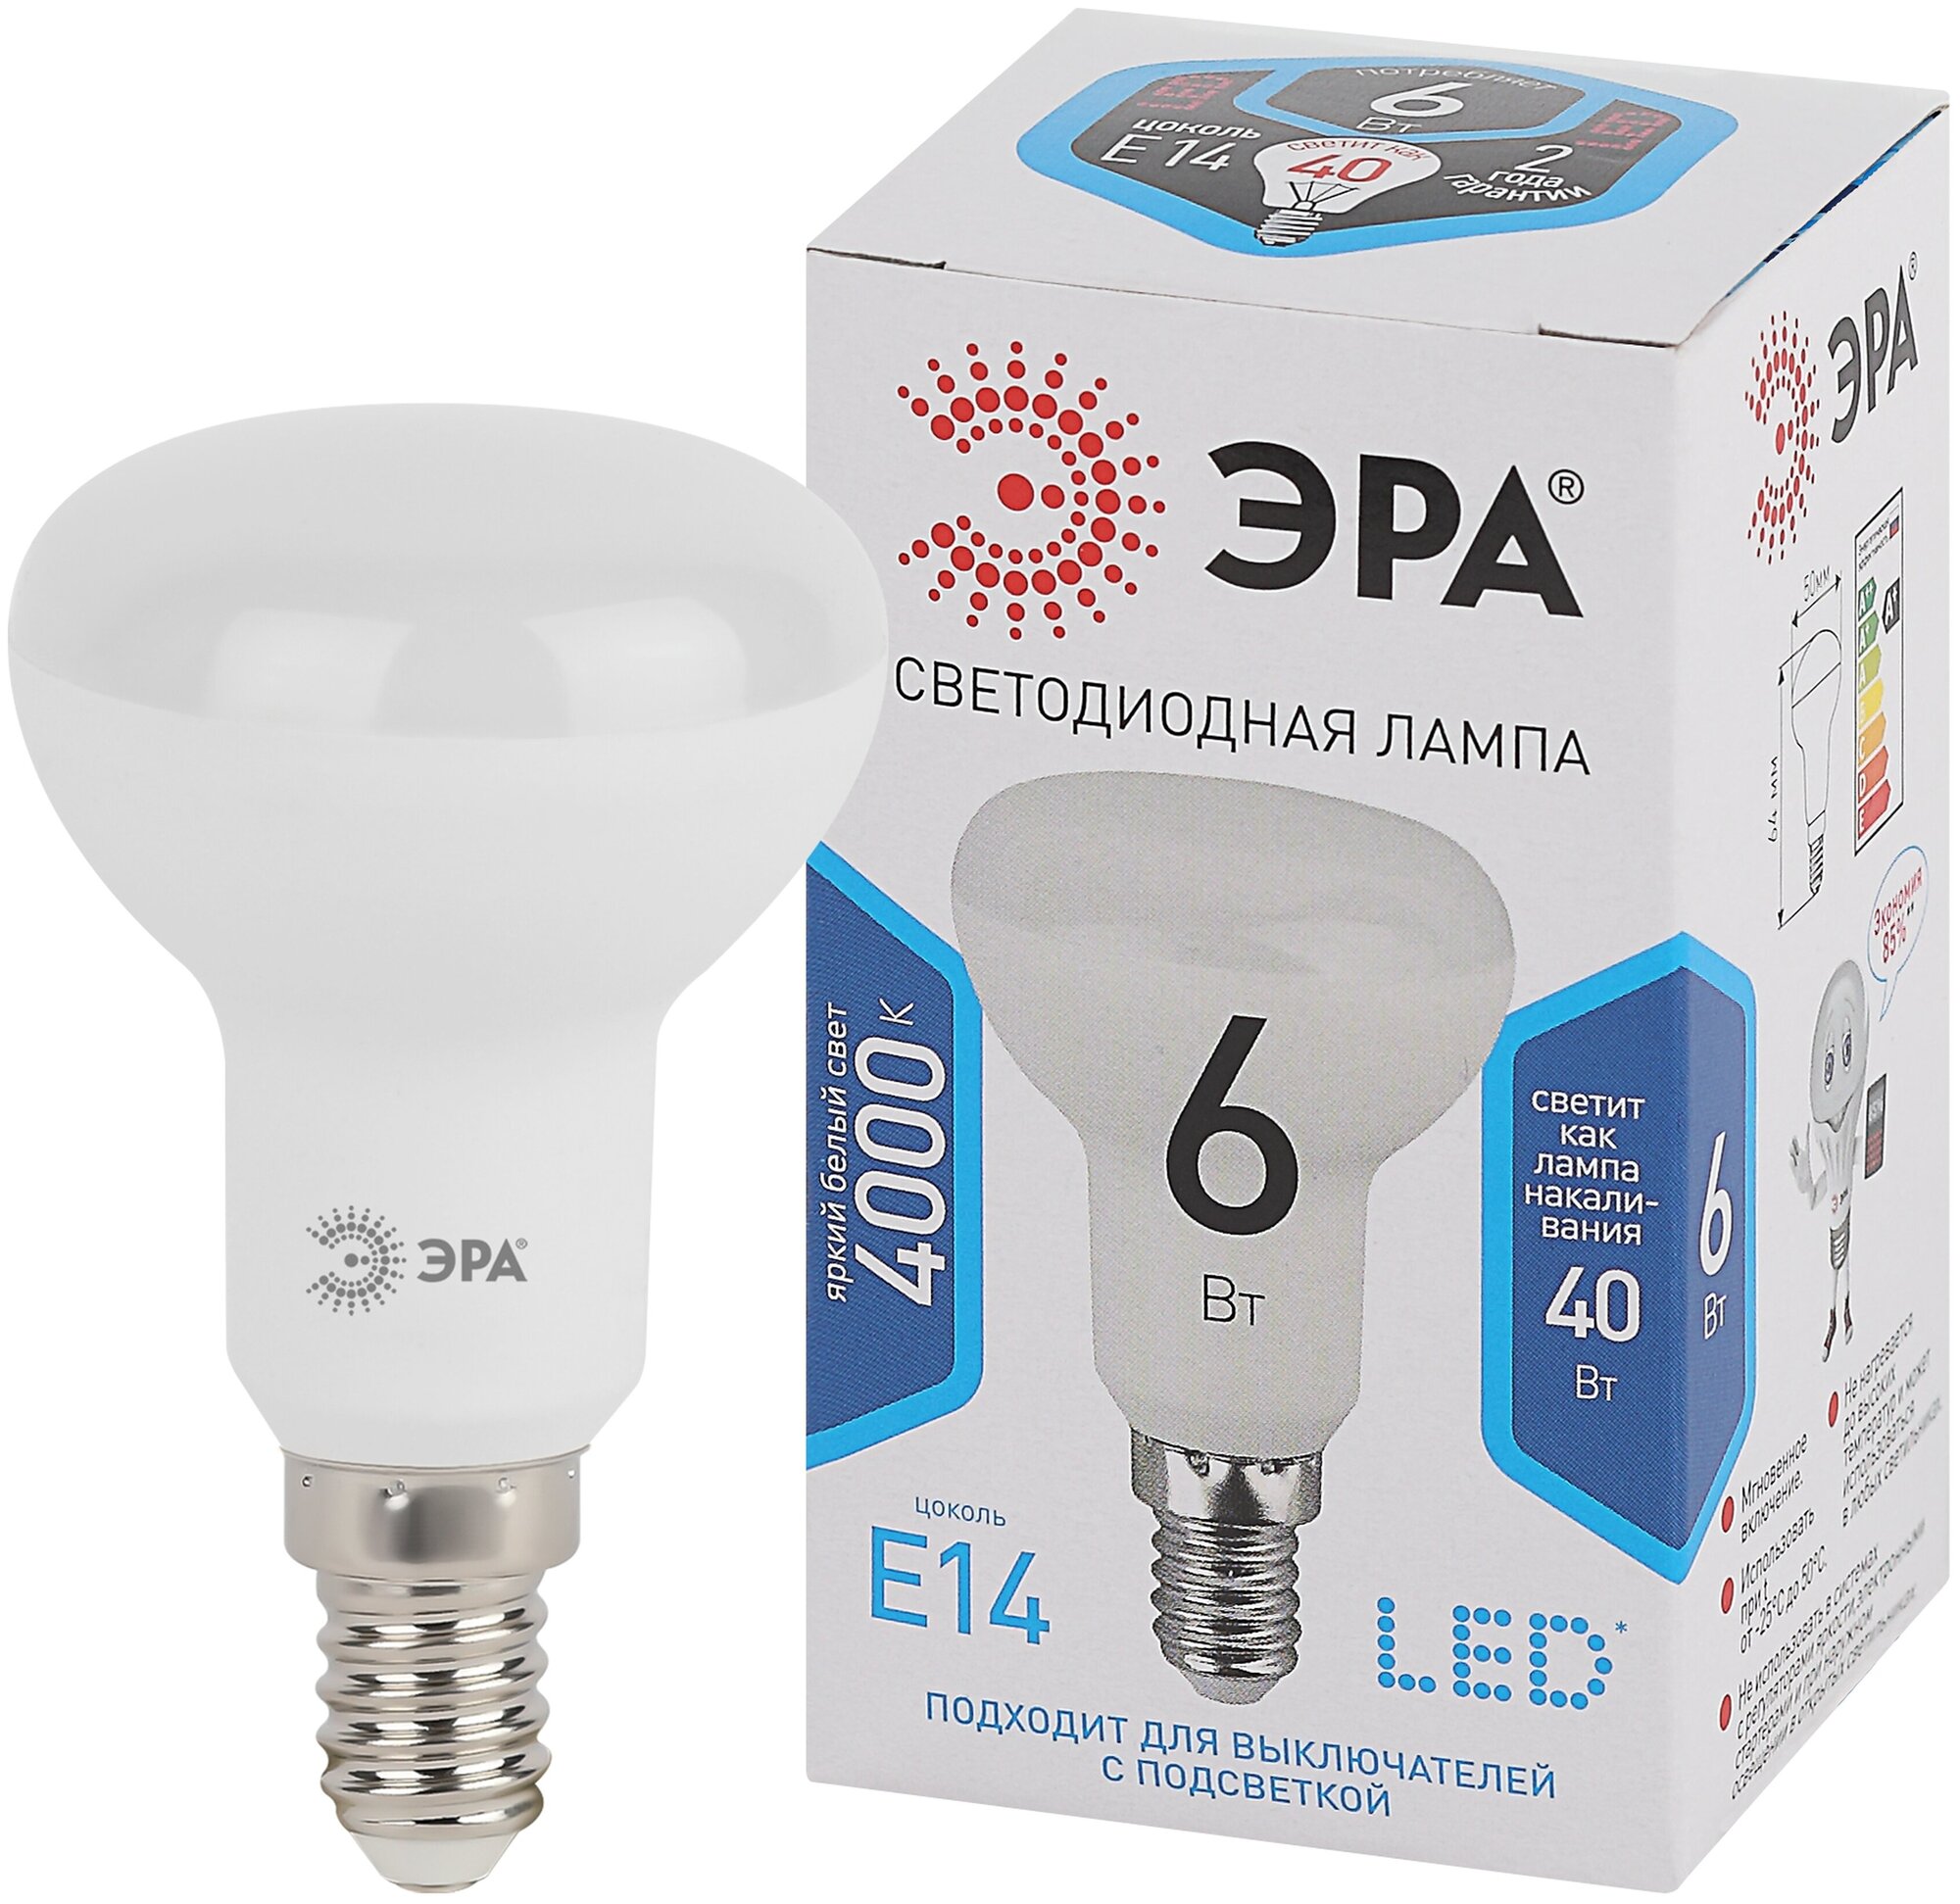 Лампочка светодиодная ЭРА STD LED R50-6W-840-E14 Е14 6Вт рефлектор нейтральный белый свет арт. Б0020556 (1 шт.)